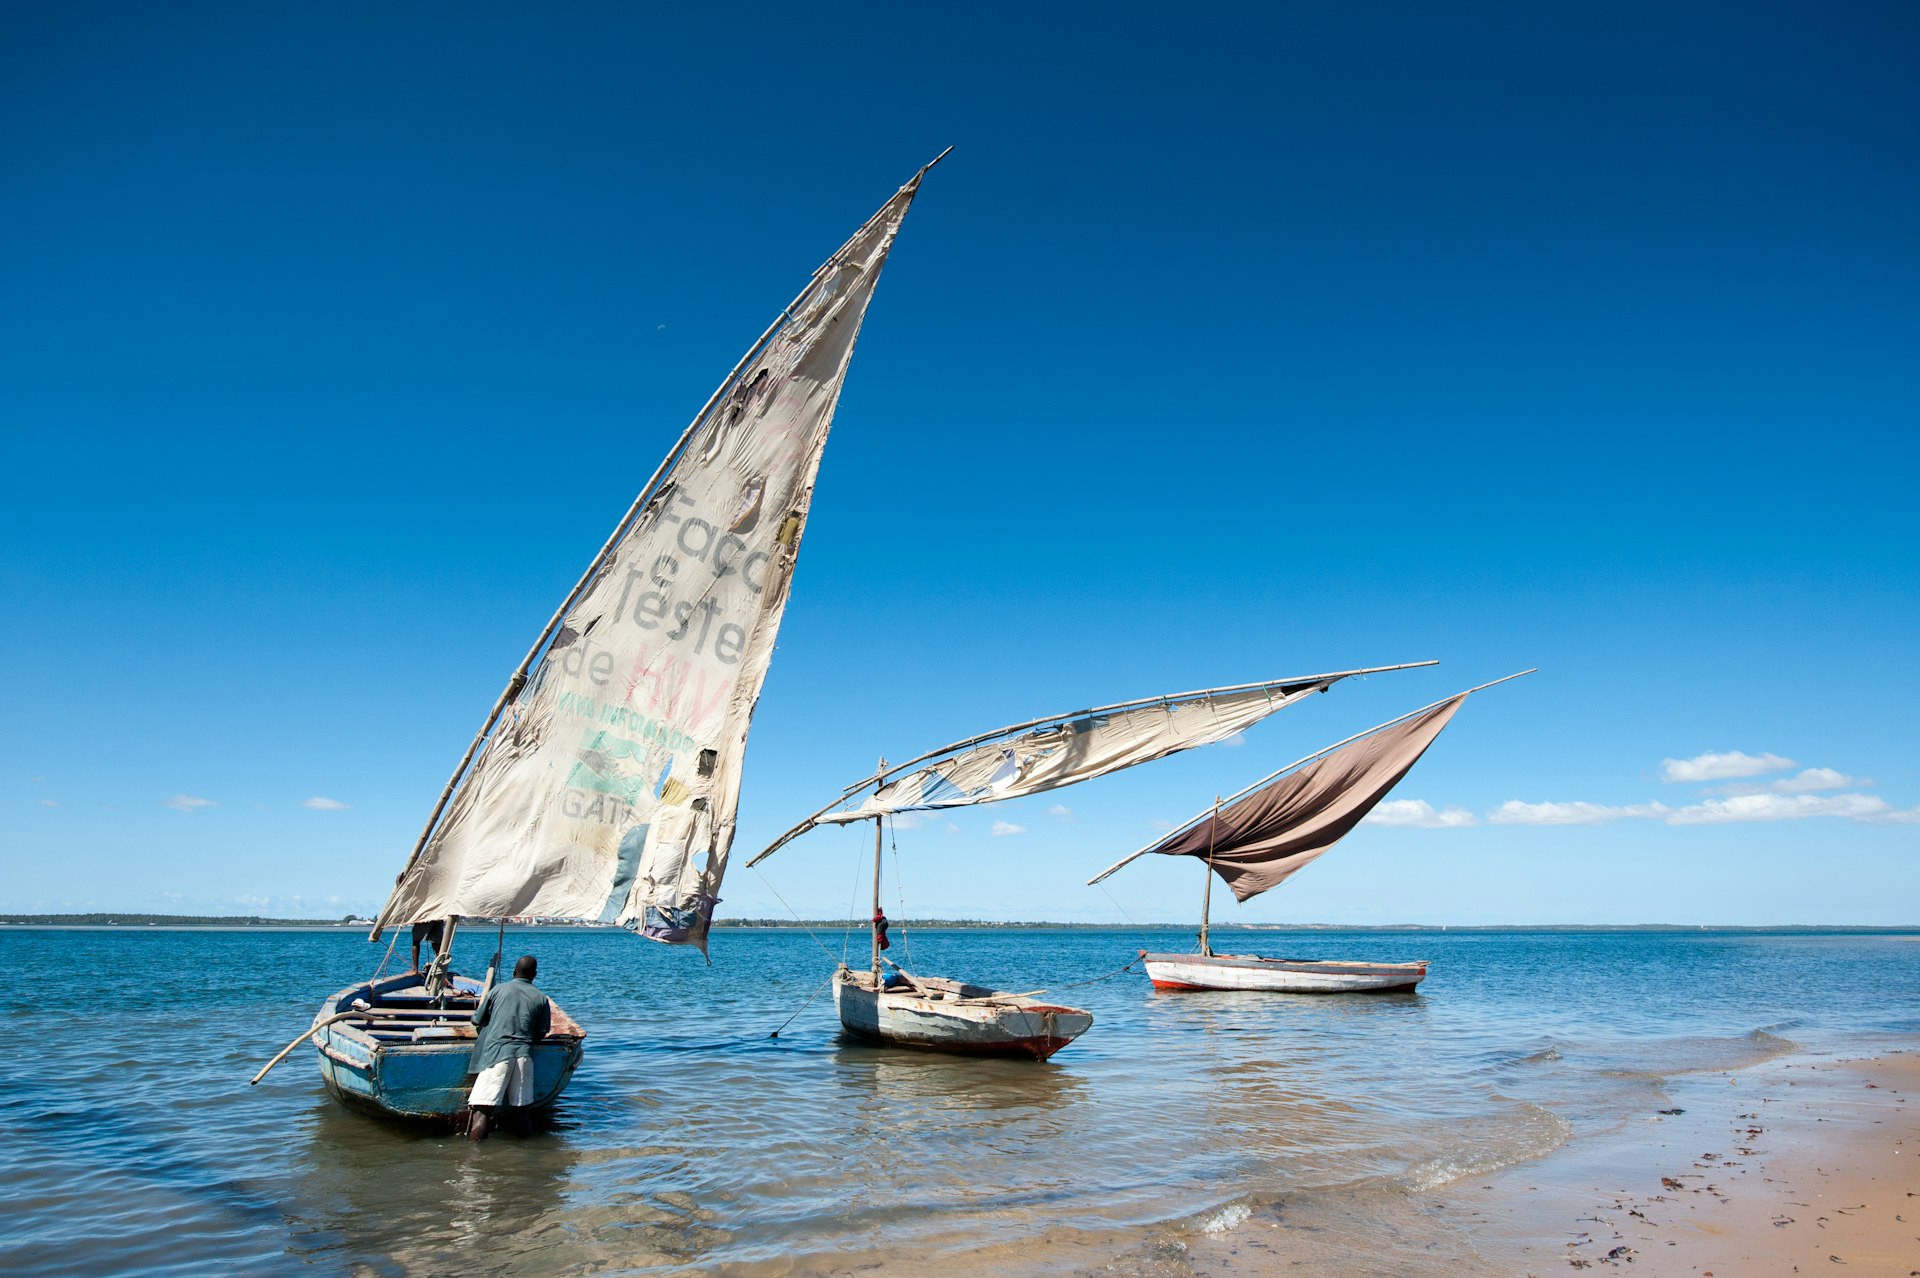 Lake Malawi with the small sailing boats.